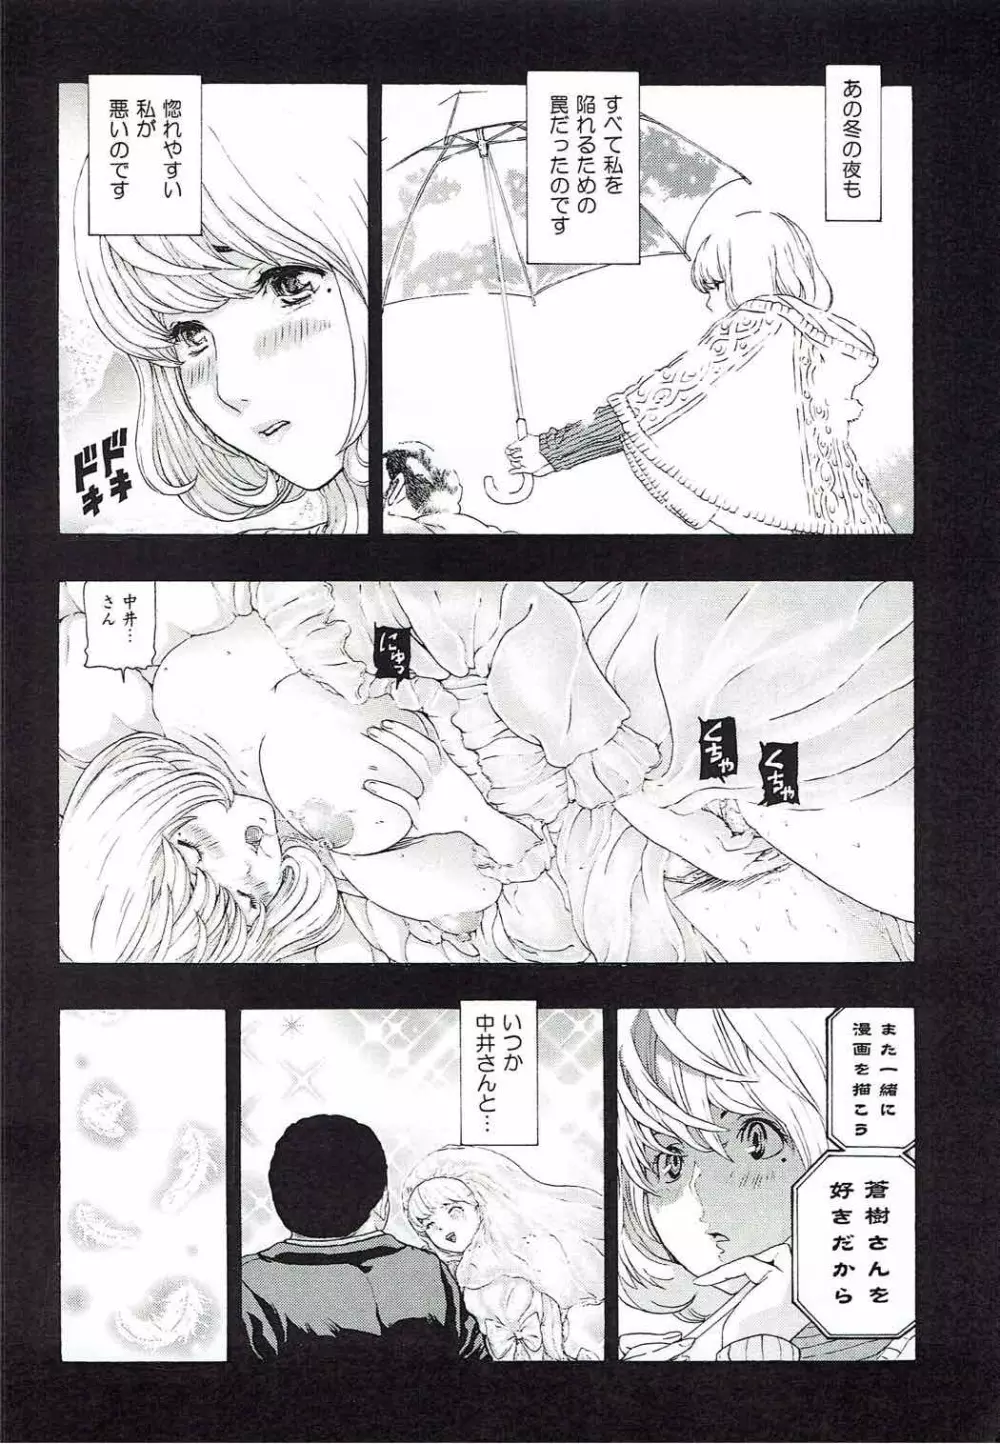 [け゜ぴけ゜ぴ (ぬャカな)] MANKOKU漫画家(とアシスタント)残酷物語 (バクマン。) 17ページ